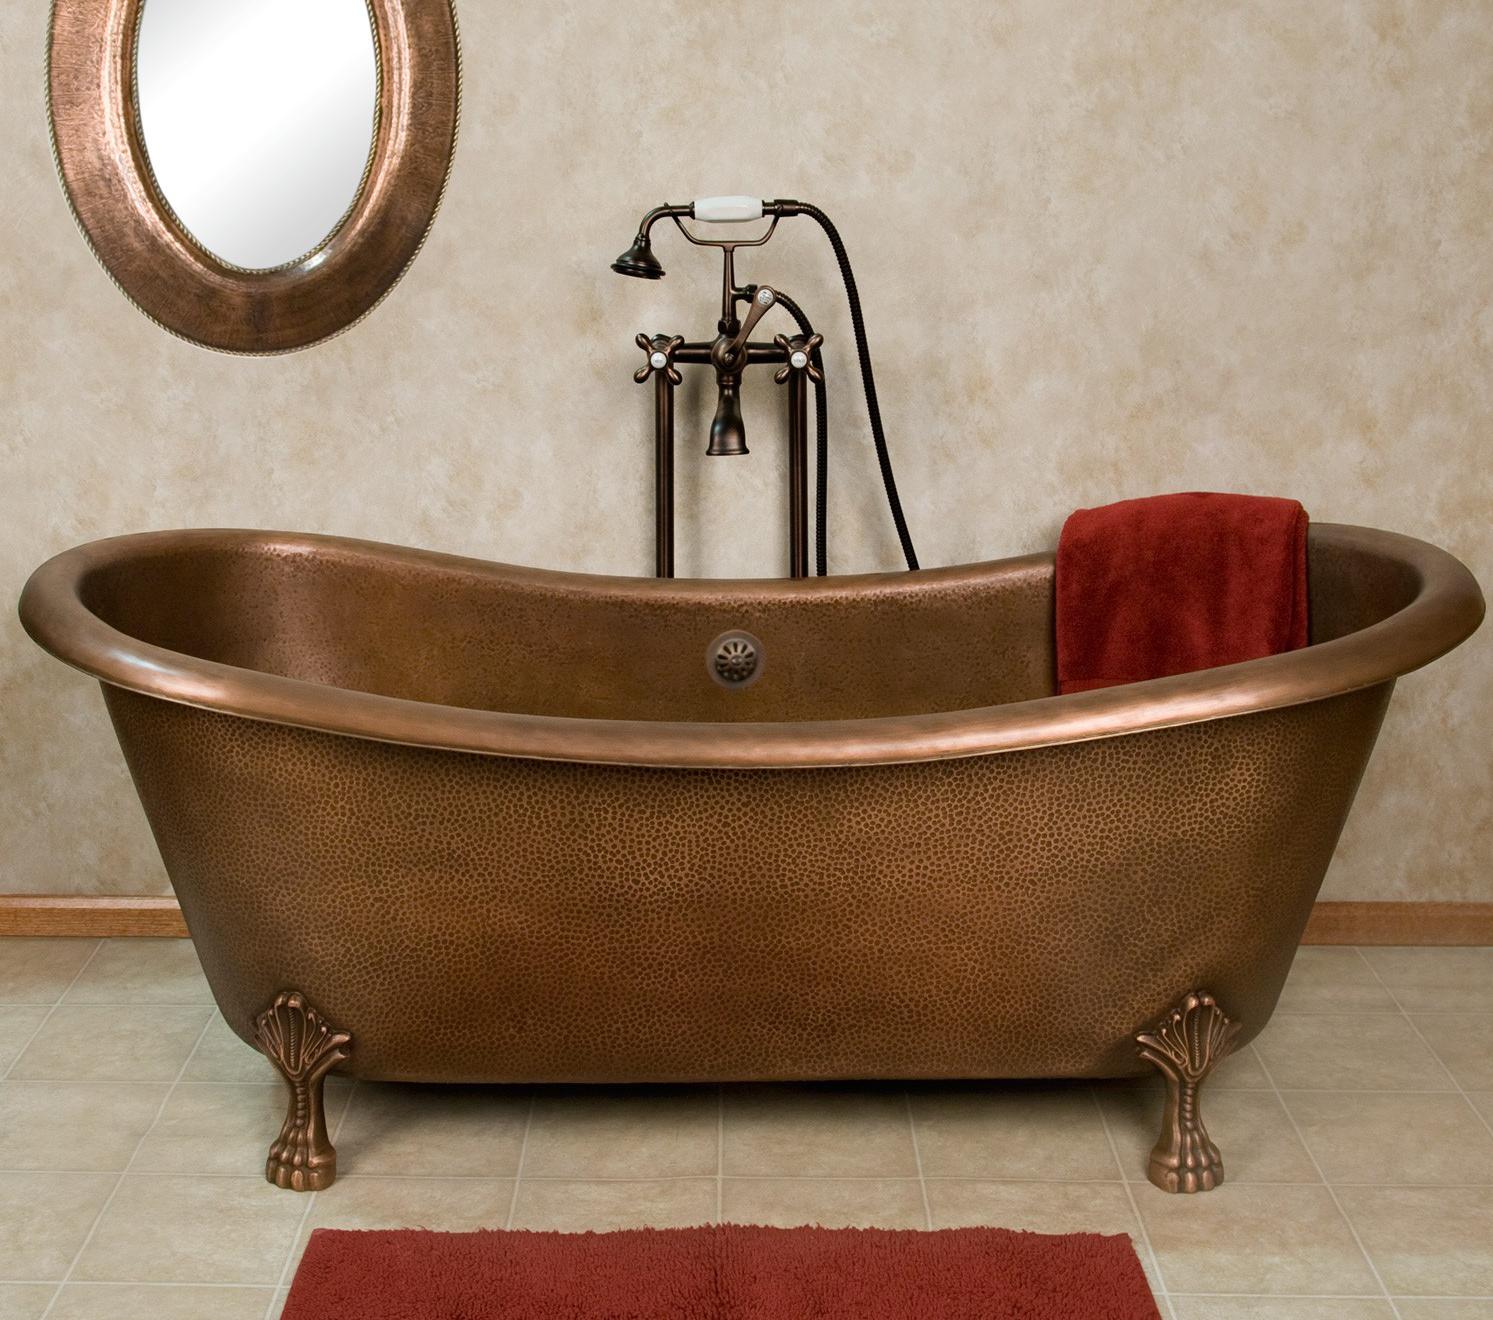 古色古香的铜制浴缸老式的复古魅力重塑你的浴室空间